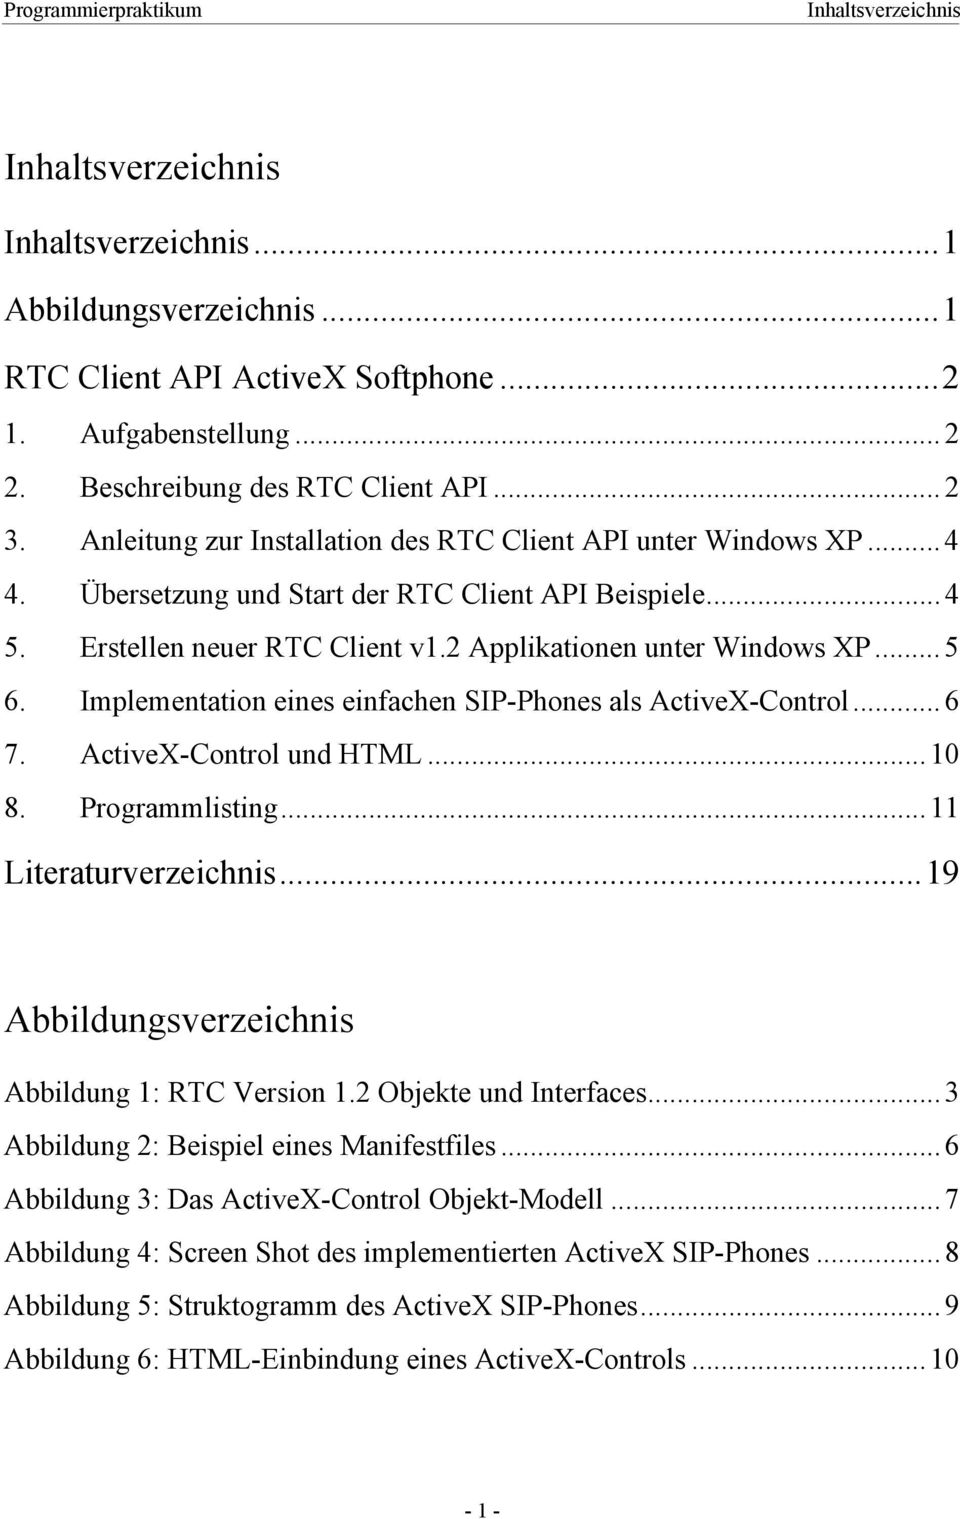 Implementation eines einfachen SIP-Phones als ActiveX-Control... 6 7. ActiveX-Control und HTML... 10 8. Programmlisting... 11 Literaturverzeichnis...19 Abbildungsverzeichnis Abbildung 1: RTC Version 1.